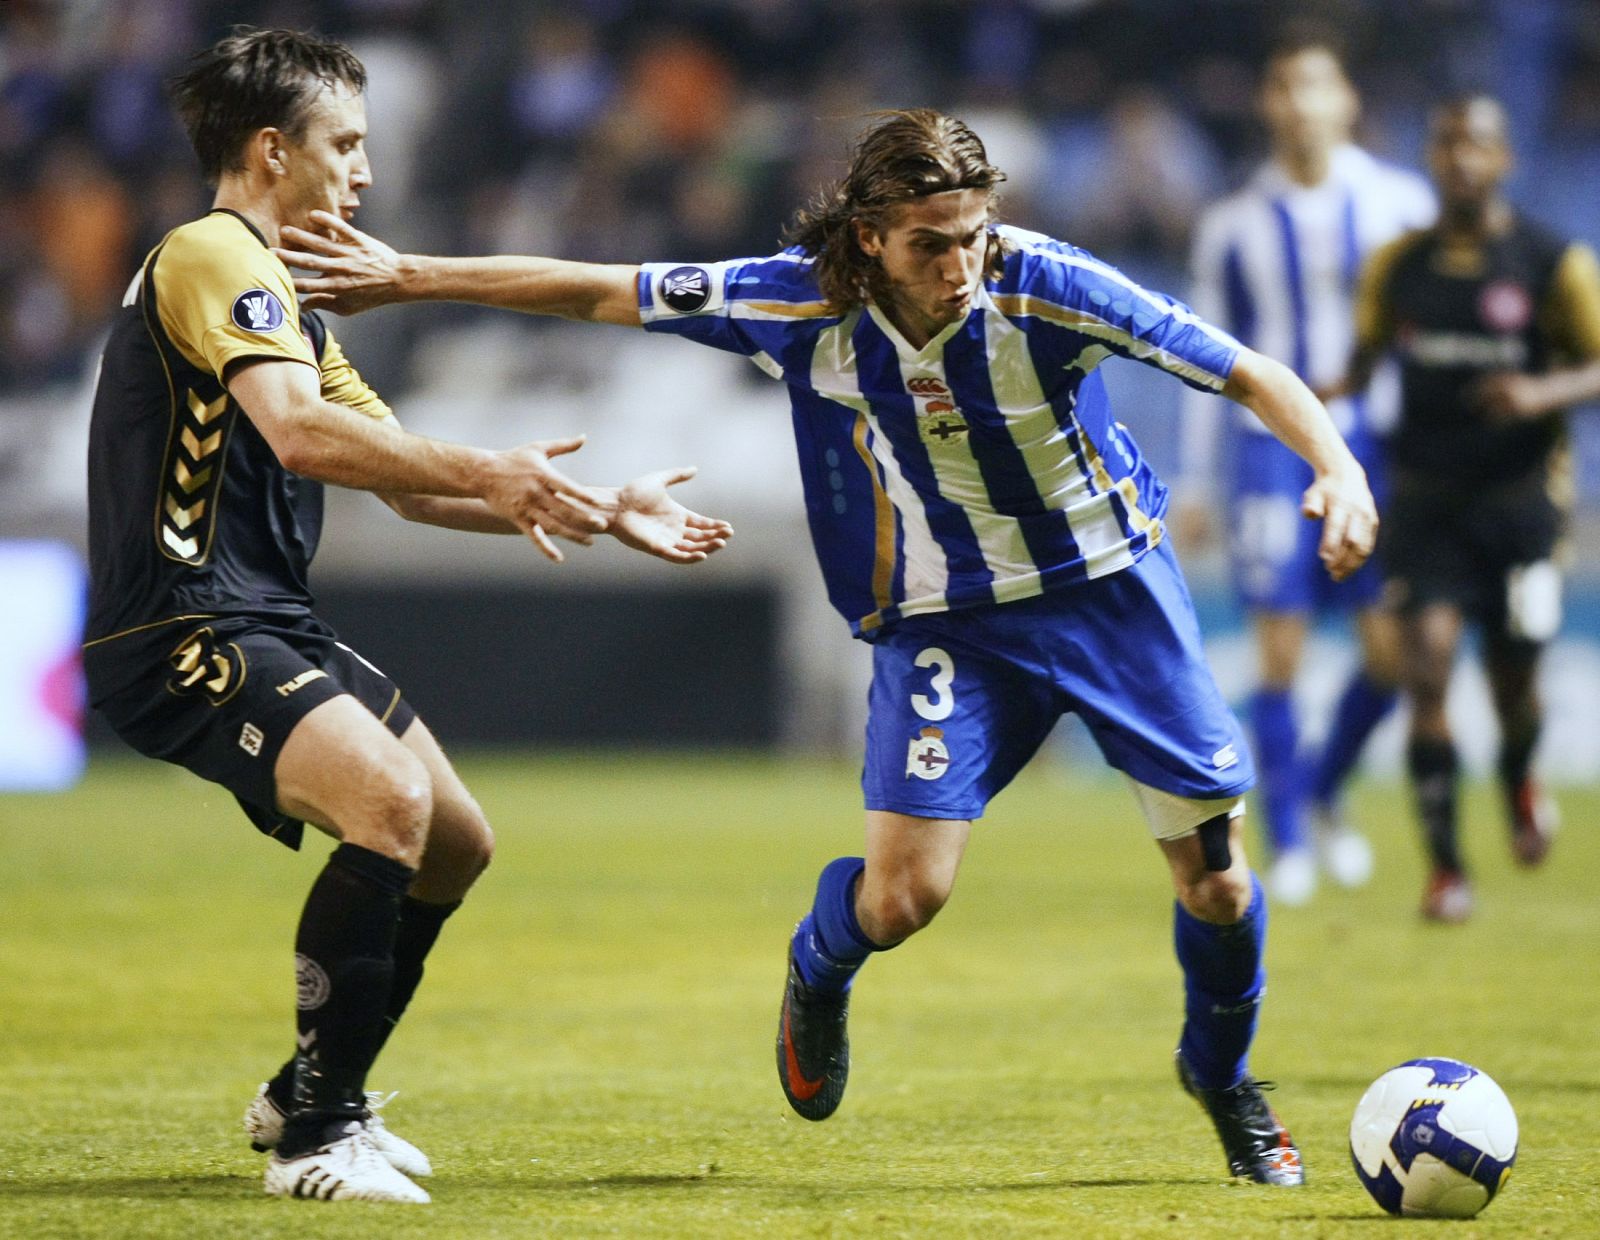 Filipe luciendo la camiseta del Deportivo de la Coruna la pasada temporada.